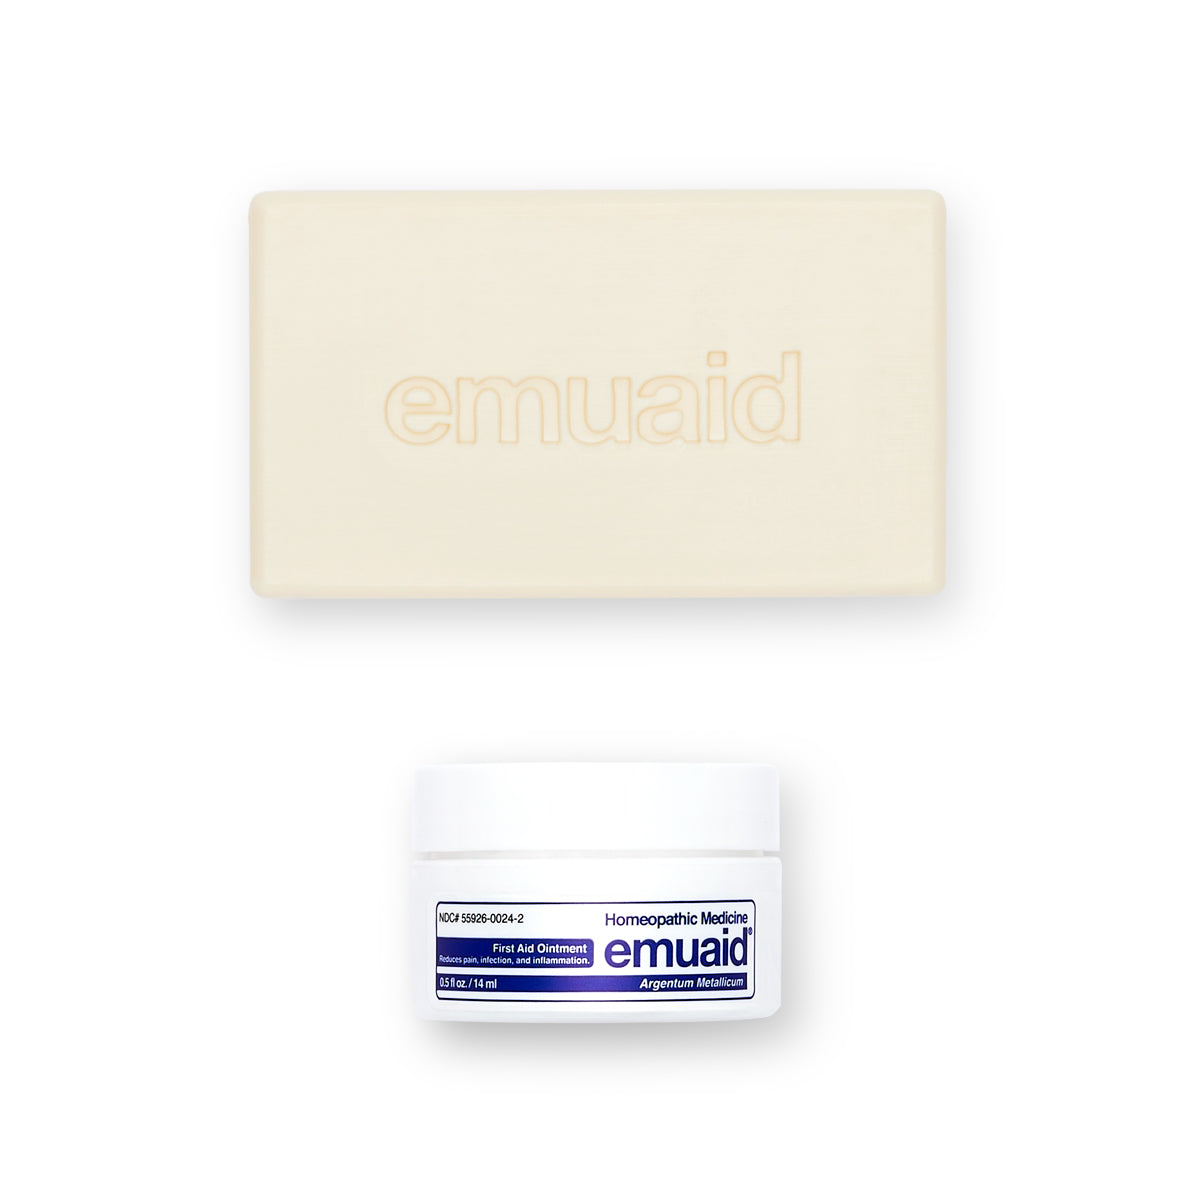 Questa è un'immagine di EMUAID® Regular First Aid Ointment 0.5oz e di EMUAID® Therapeutic Moisture Bar.  